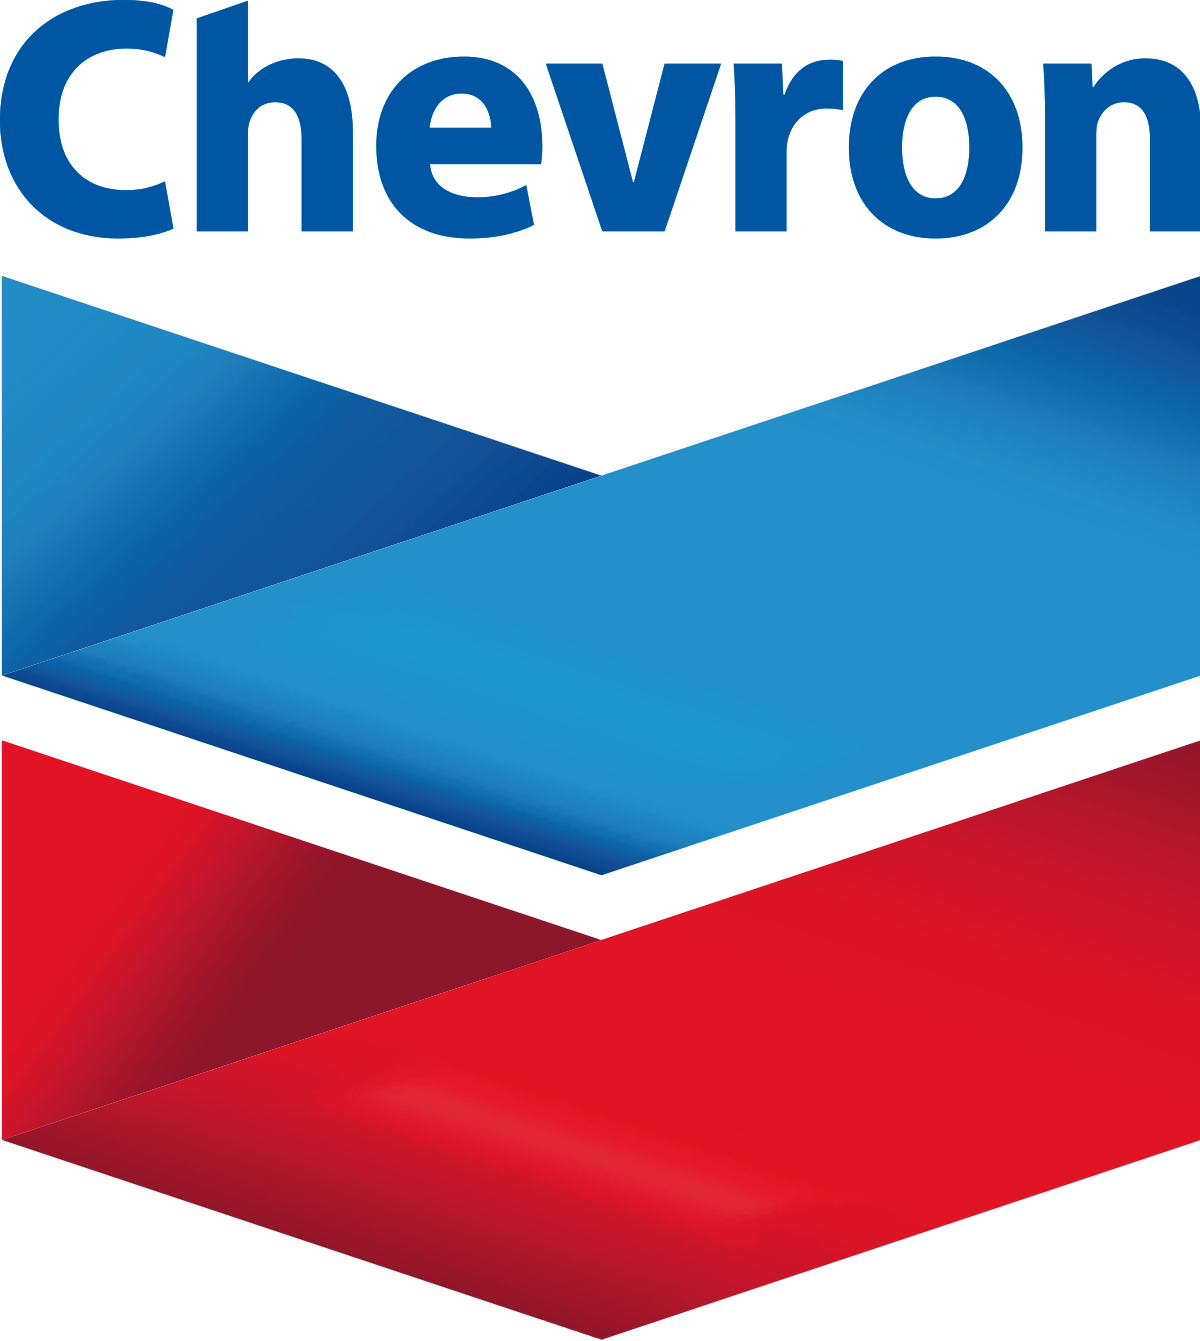 Chevron Oil Company Logo - Chevron Corporation